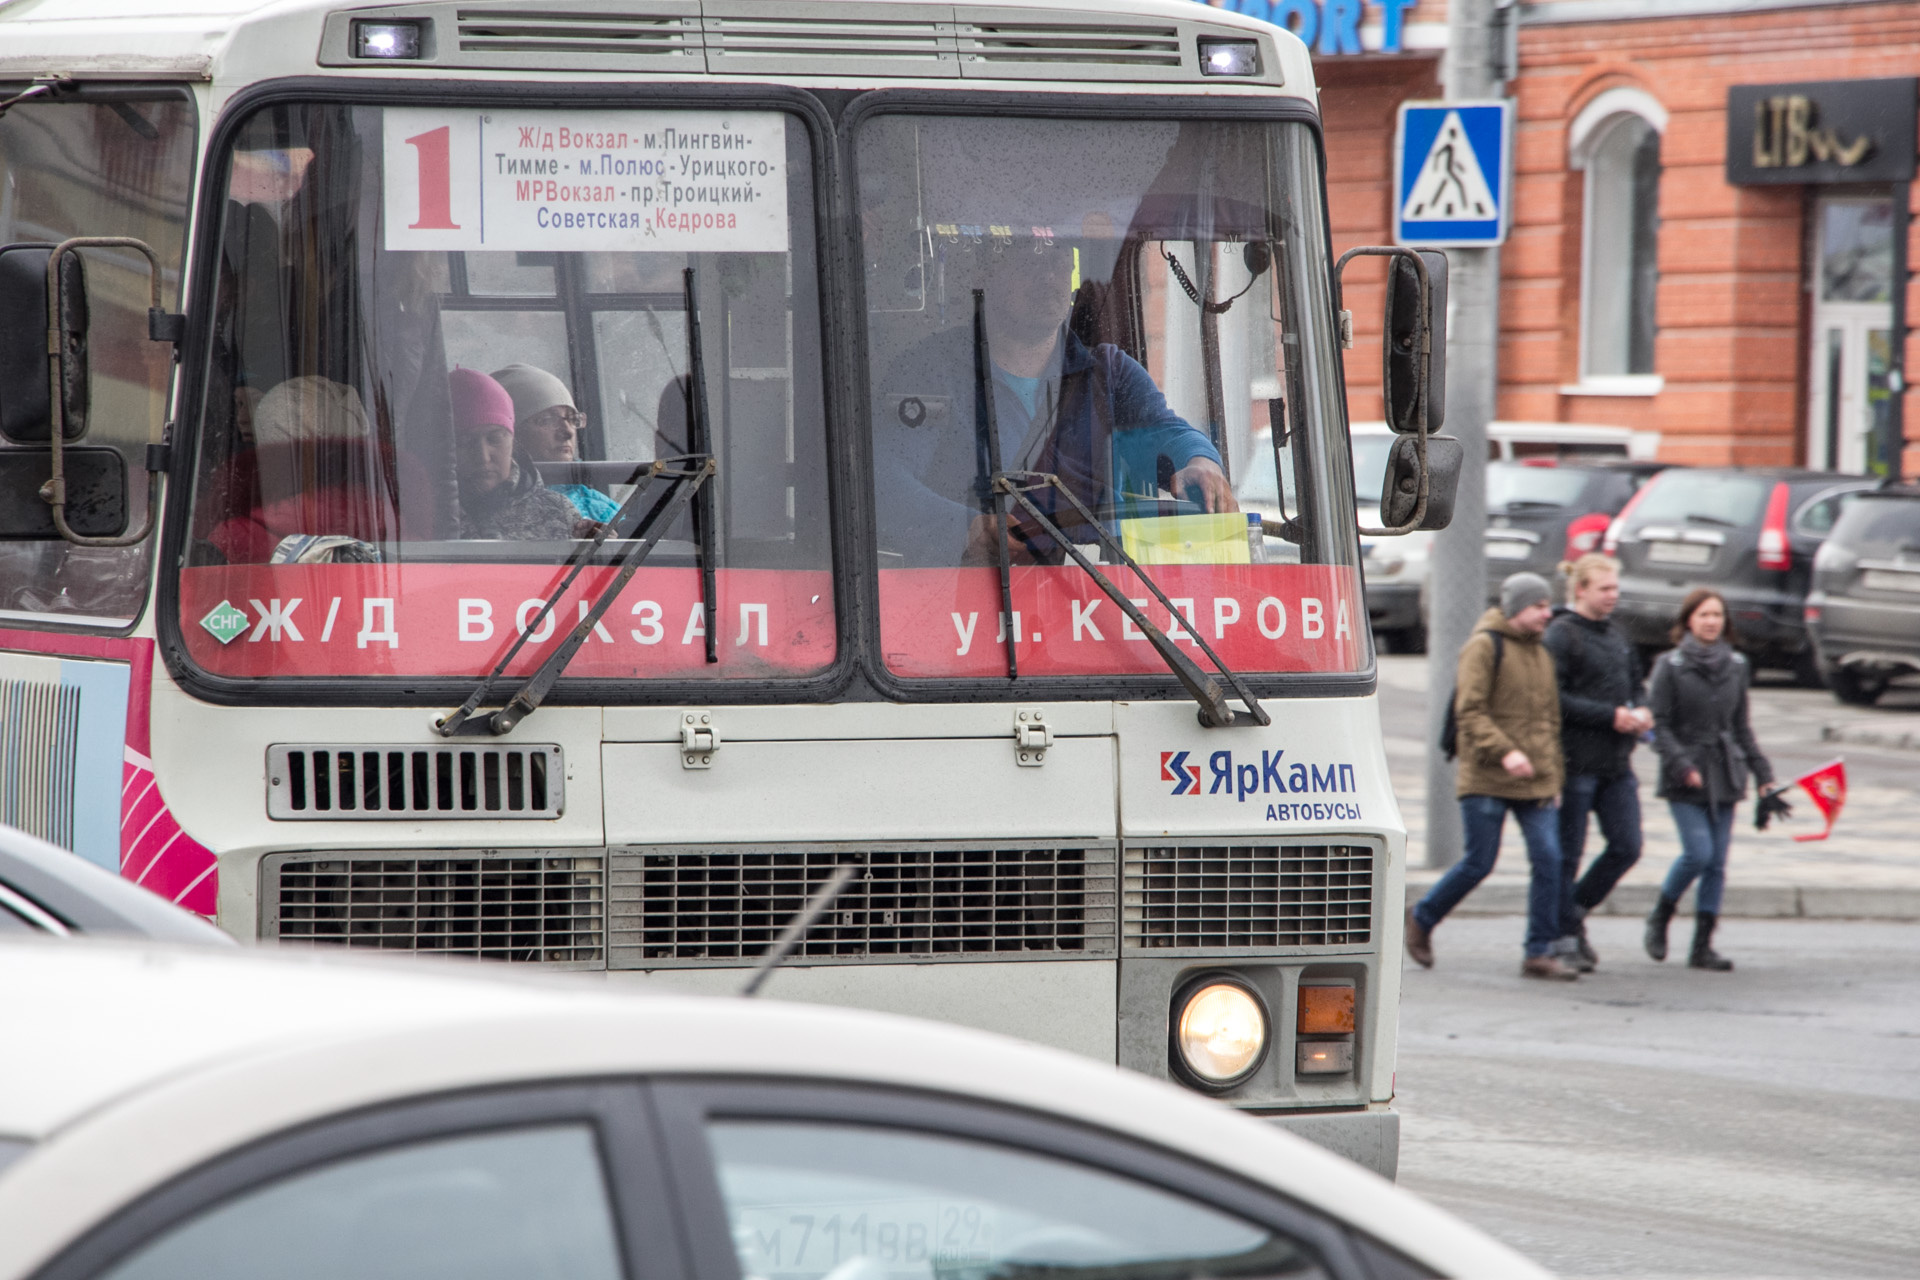 Игорь Годзиш: «Жители не поняли, почему тариф вырос, — "Вчера ехал в этом автобусе за 21 рубль, сегодня еду за 26"»